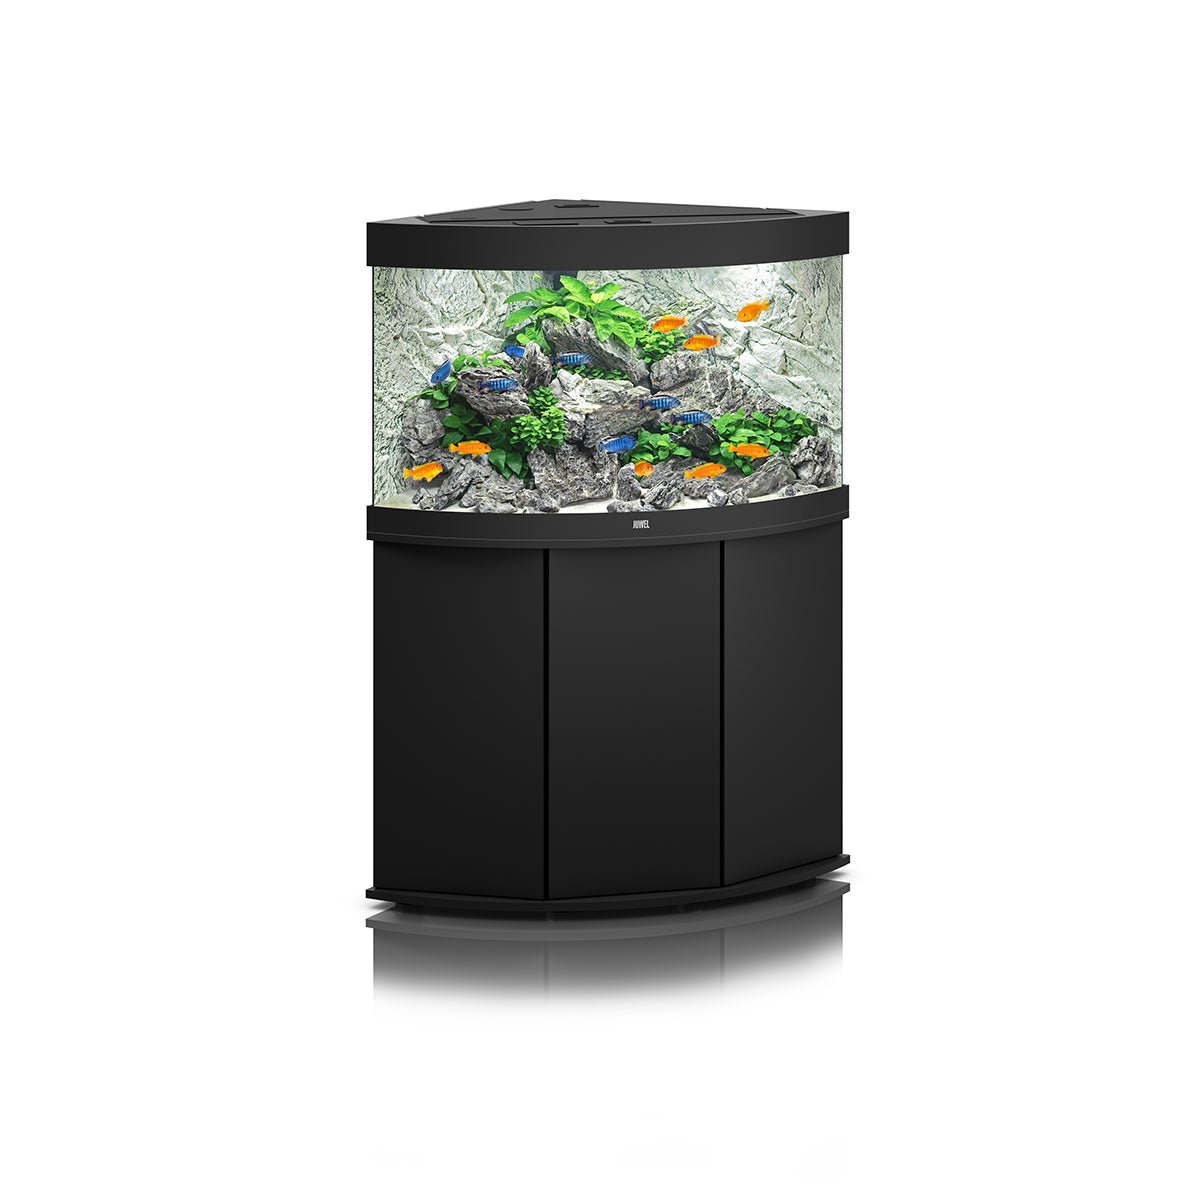 Juwel Trigon 190 LED Aquarium and Cabinet (Black) - Charterhouse Aquatics